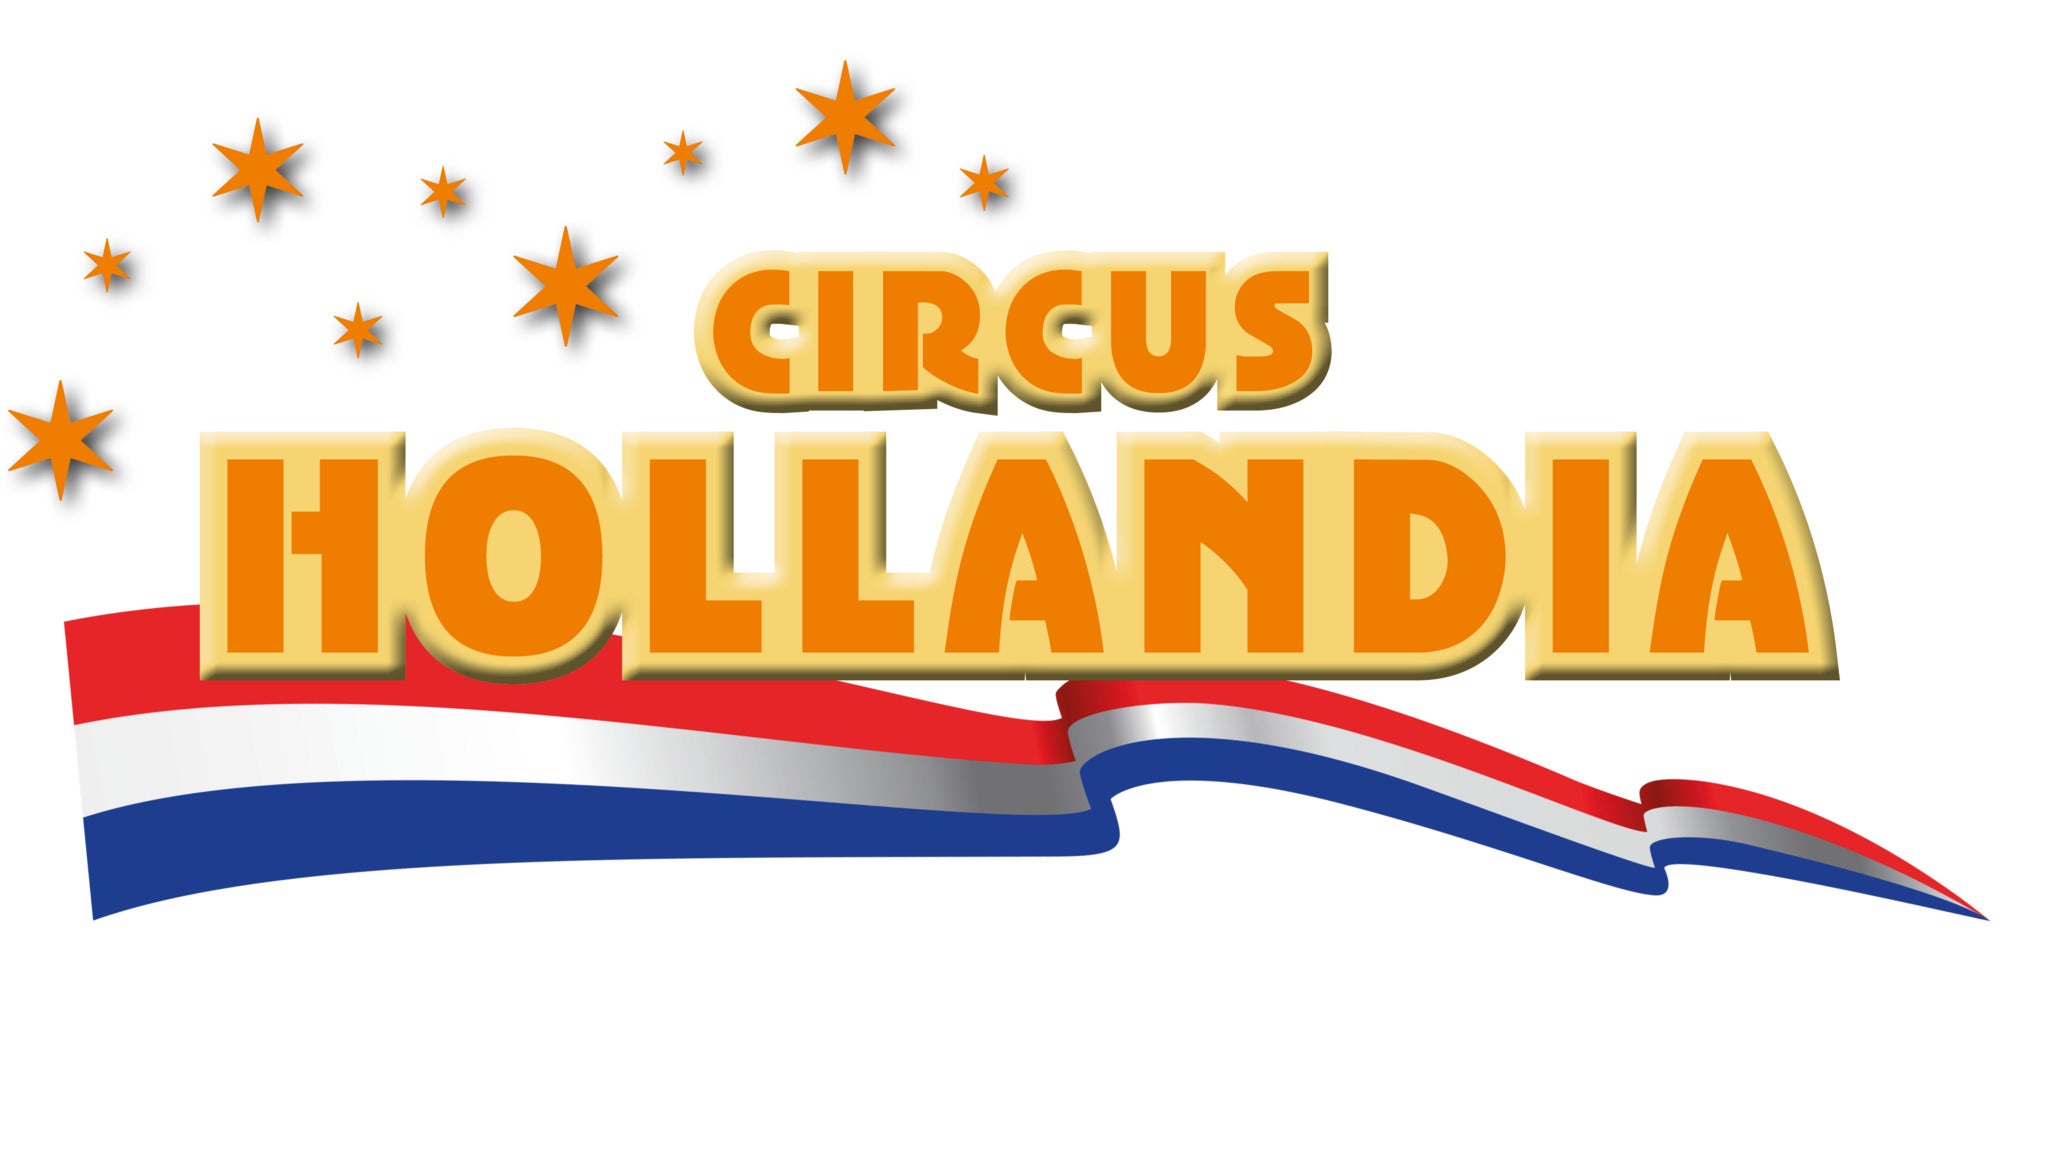 Circus Hollandia